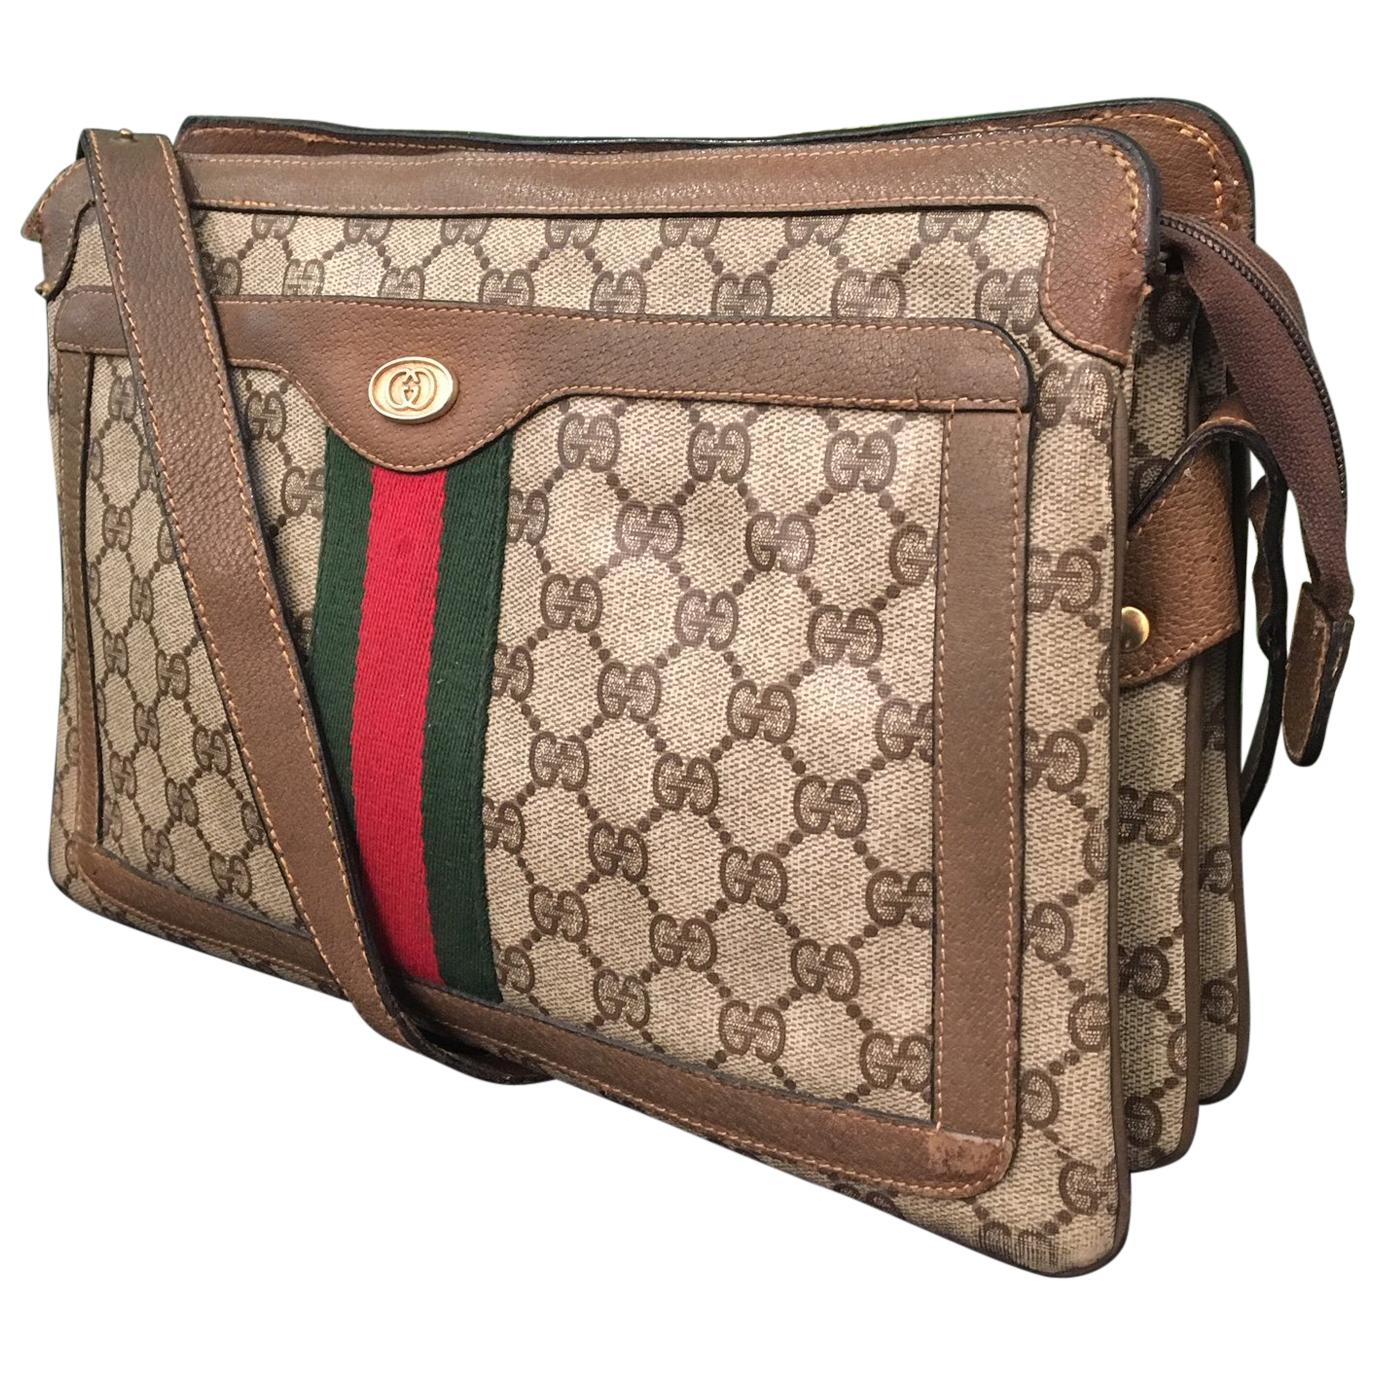 Vintage 1980s Gucci Monogram Crossbody Handbag